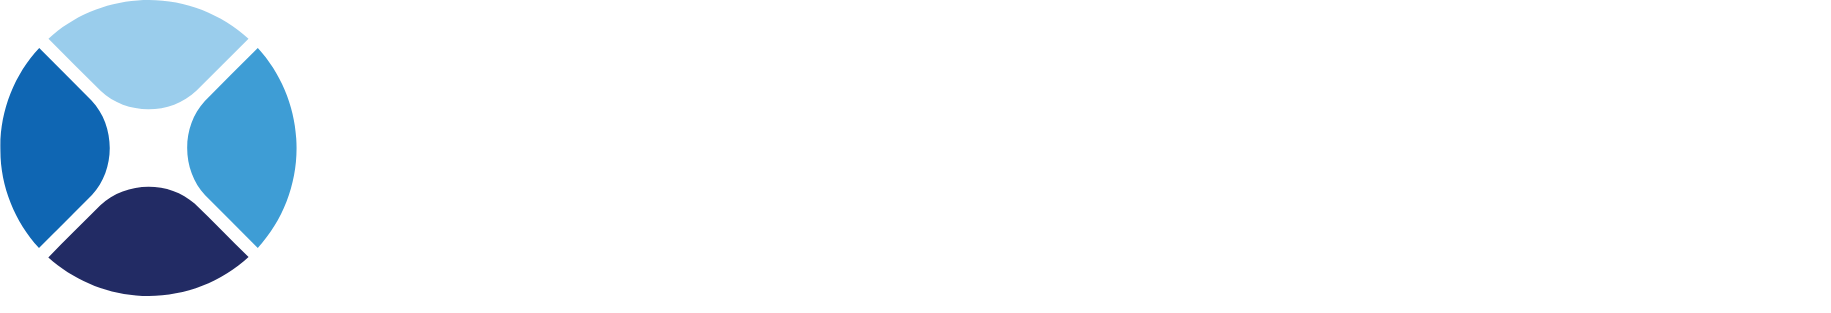 Origin Bancorp logo large for dark backgrounds (transparent PNG)